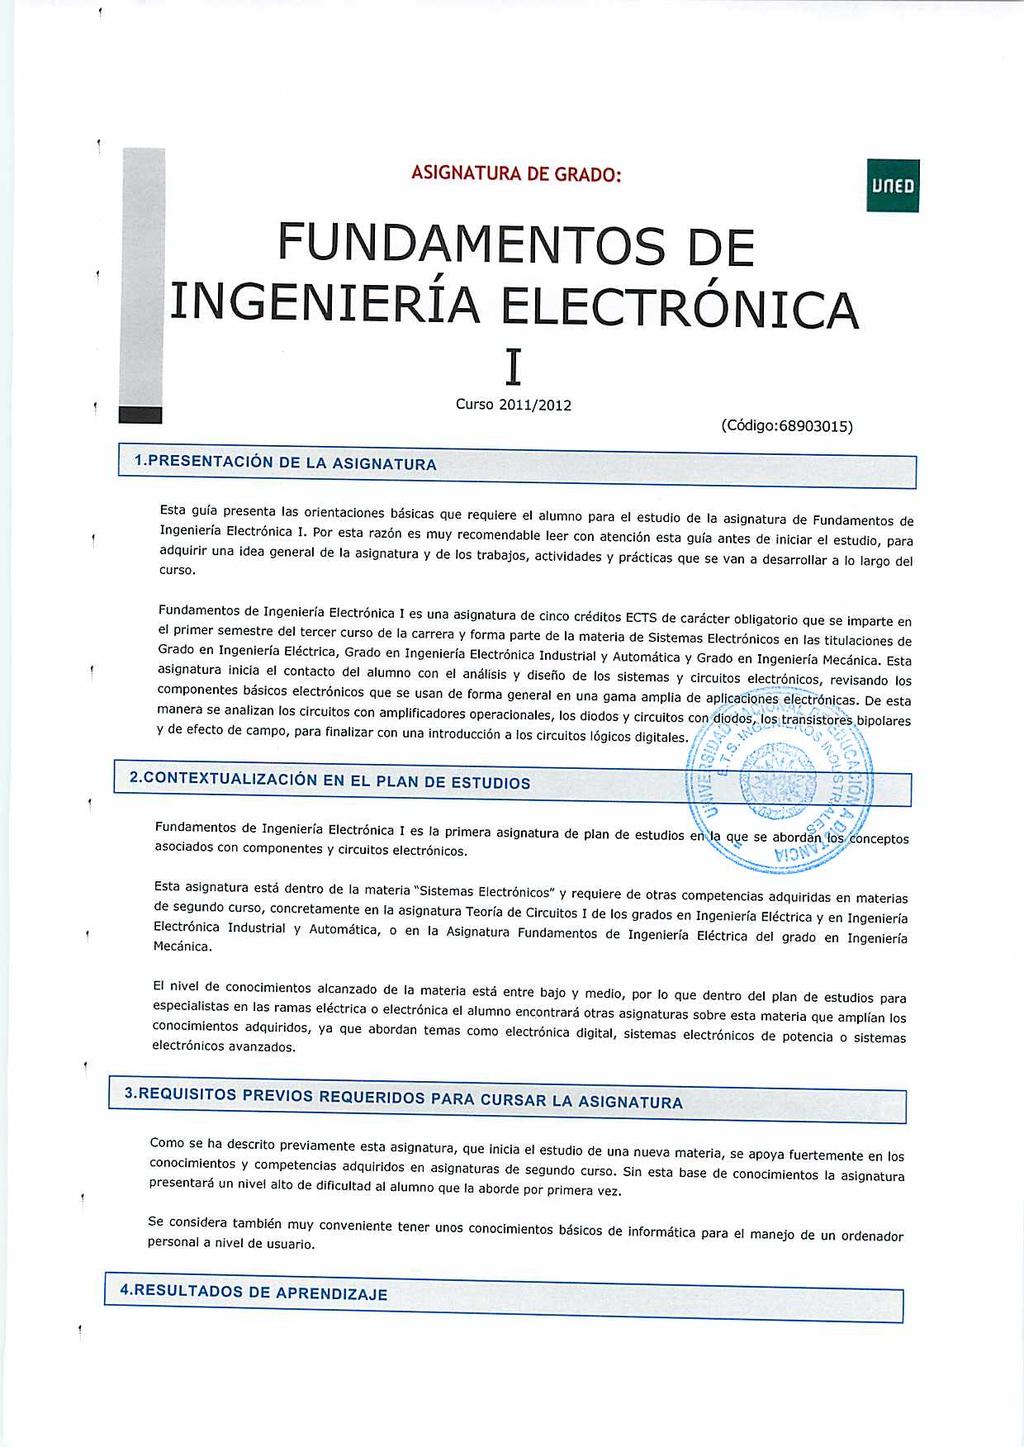 ASIGNATURA DE GRADO: FUNDAMENTOS DE INGENIERÍA ELECTRÓNICA 1.